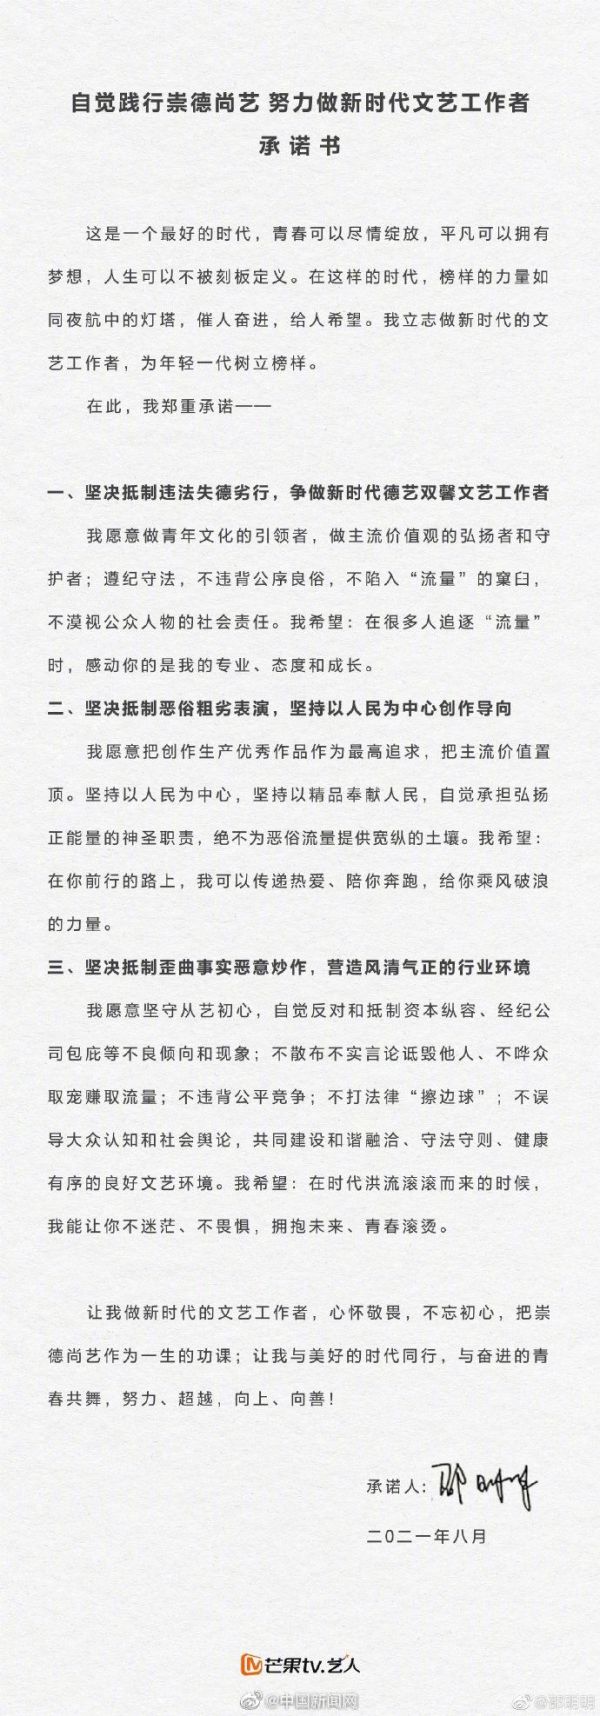 吴亦凡被捕后，中国湖南卫视芒果TV旗下的80多名艺人签署了《自觉践行崇德尚艺努力做新时代文艺工作者承诺书》